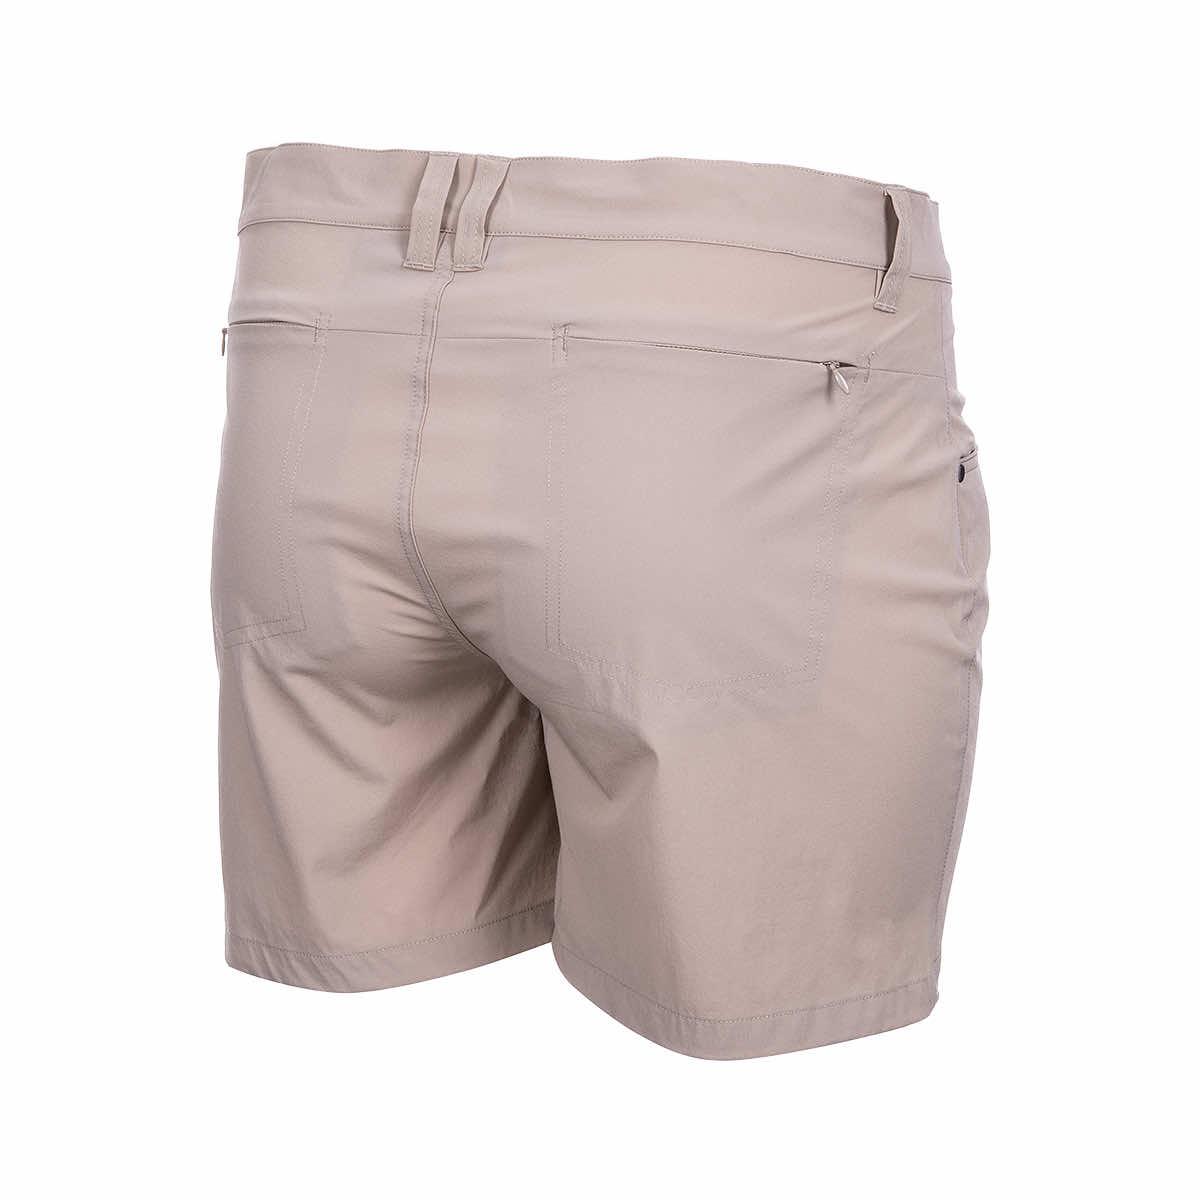 Women's Nylon Spandex Shorts, 54% OFF